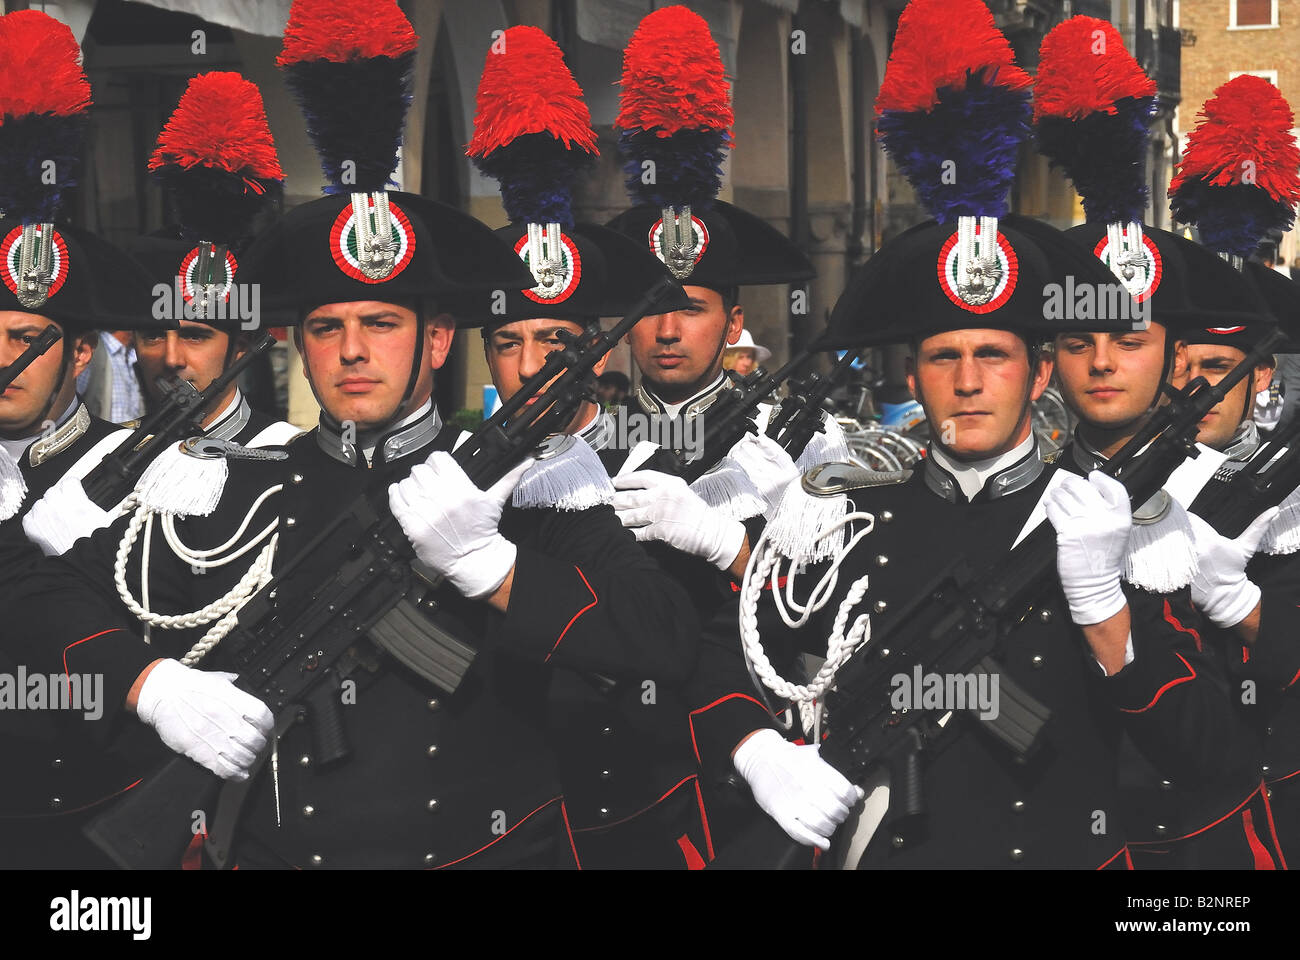 Padua, Italia, el 2 de junio, día festivo de la República.'Carabinieri' uniforme completo Fotografía de stock - Alamy